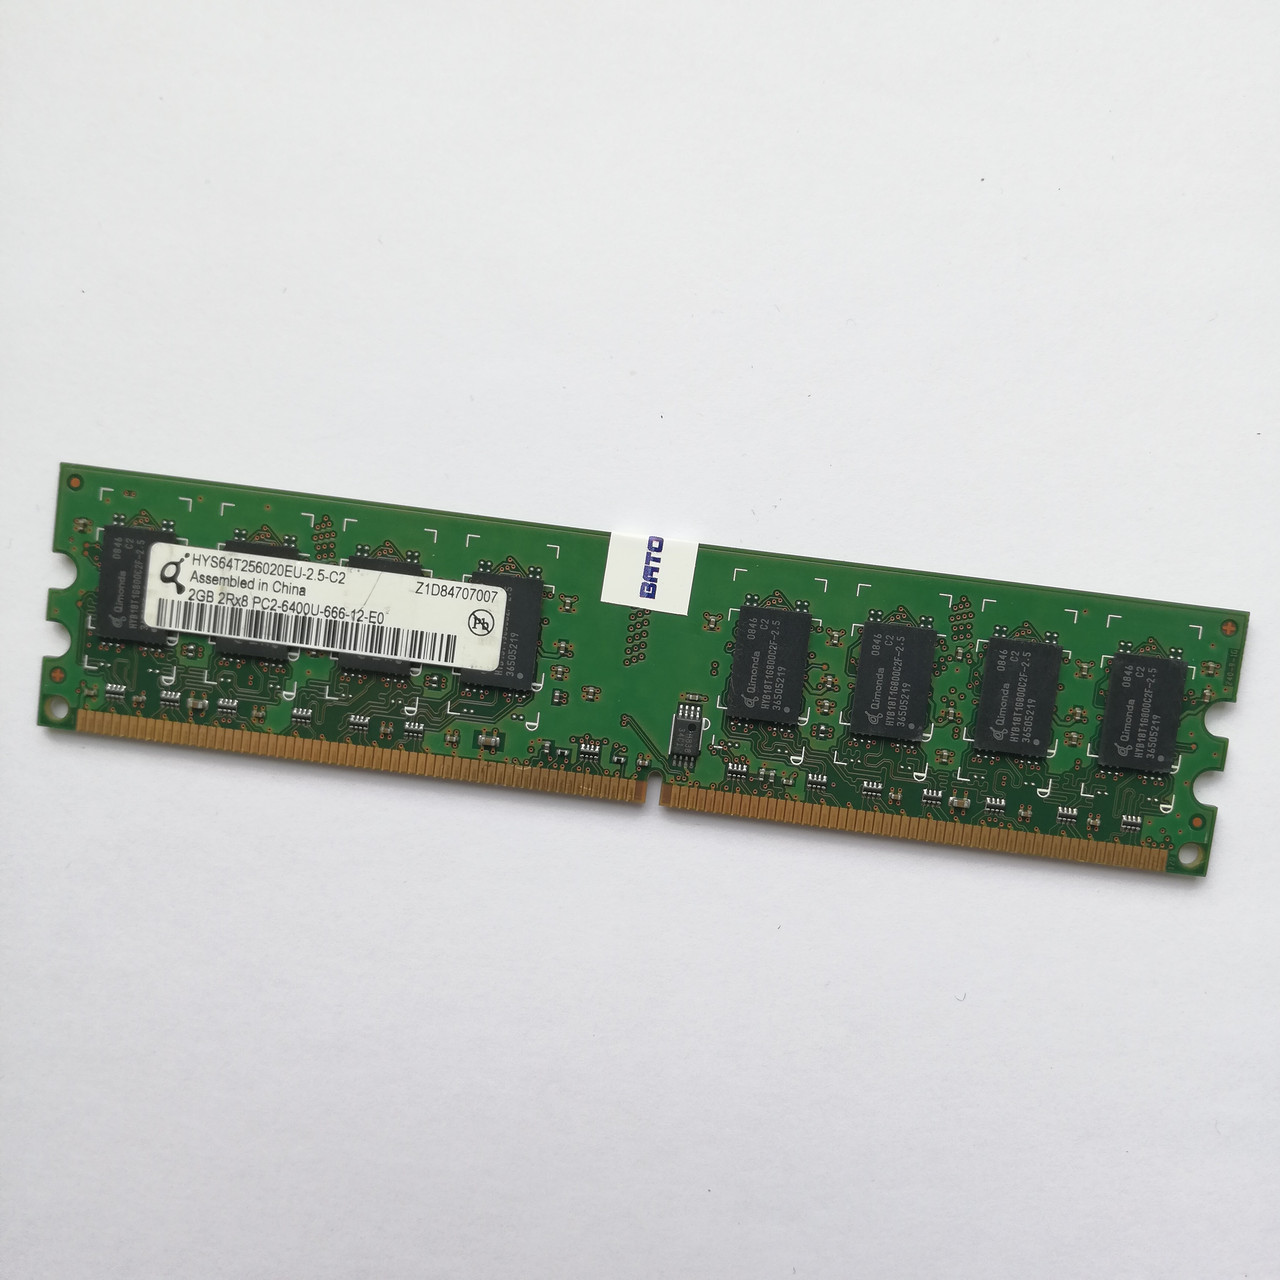 Оперативна пам'ять Qimonda DDR2 2Gb 800MHz PC2 6400U 2R8 CL6 (HYS64T256020EU-2.5-C2) Б/В, фото 1